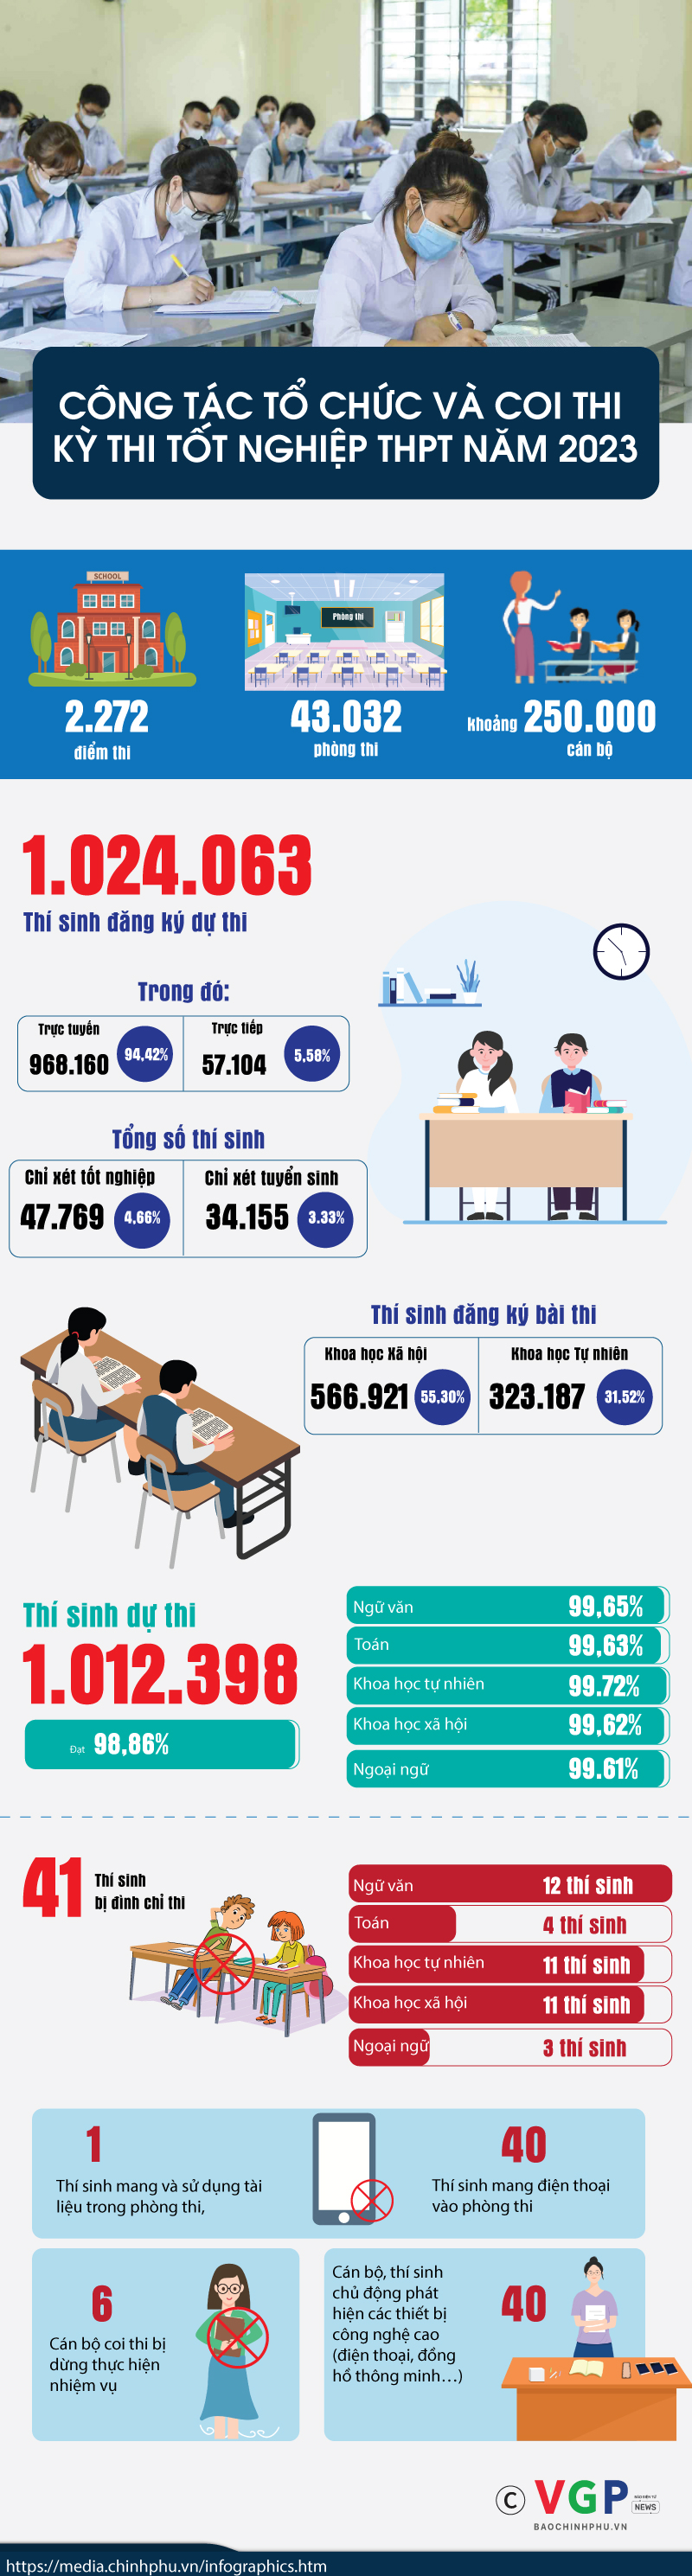 [Infographic]: Công tác tổ chức và coi thi Kỳ thi tốt nghiệp trung học phổ thông năm 2023 - Ảnh 1.